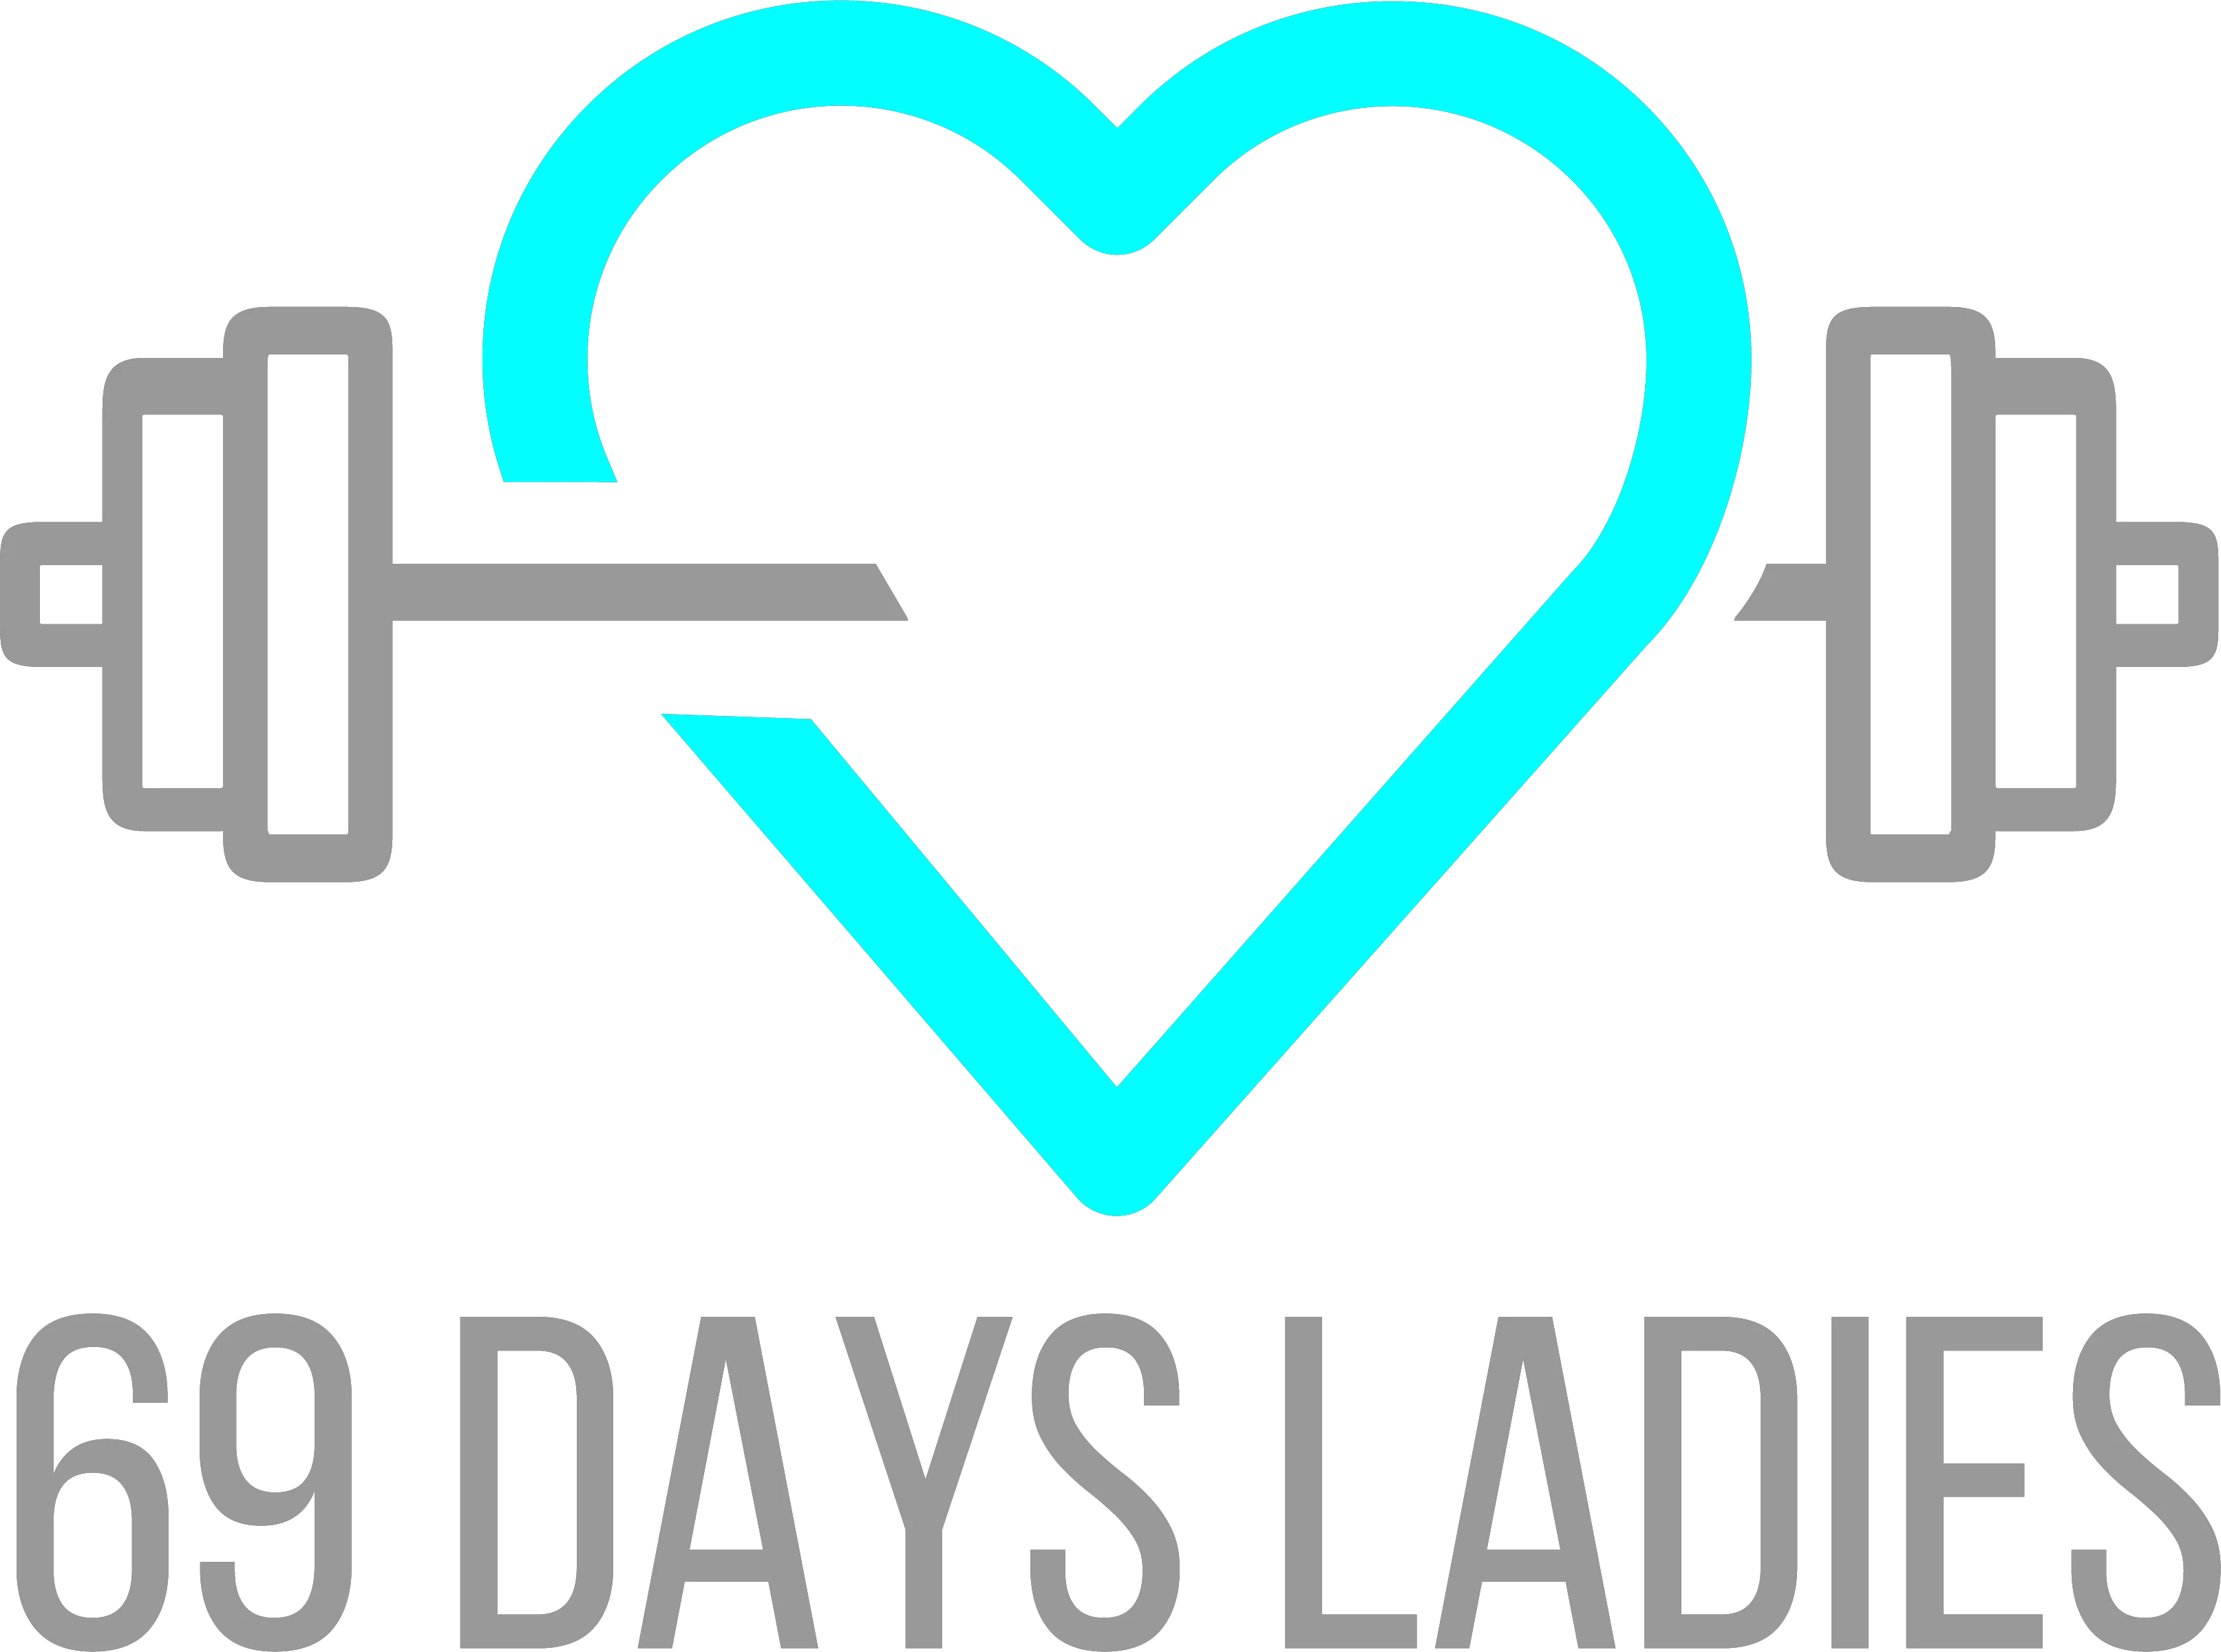 69-days-ladies.de